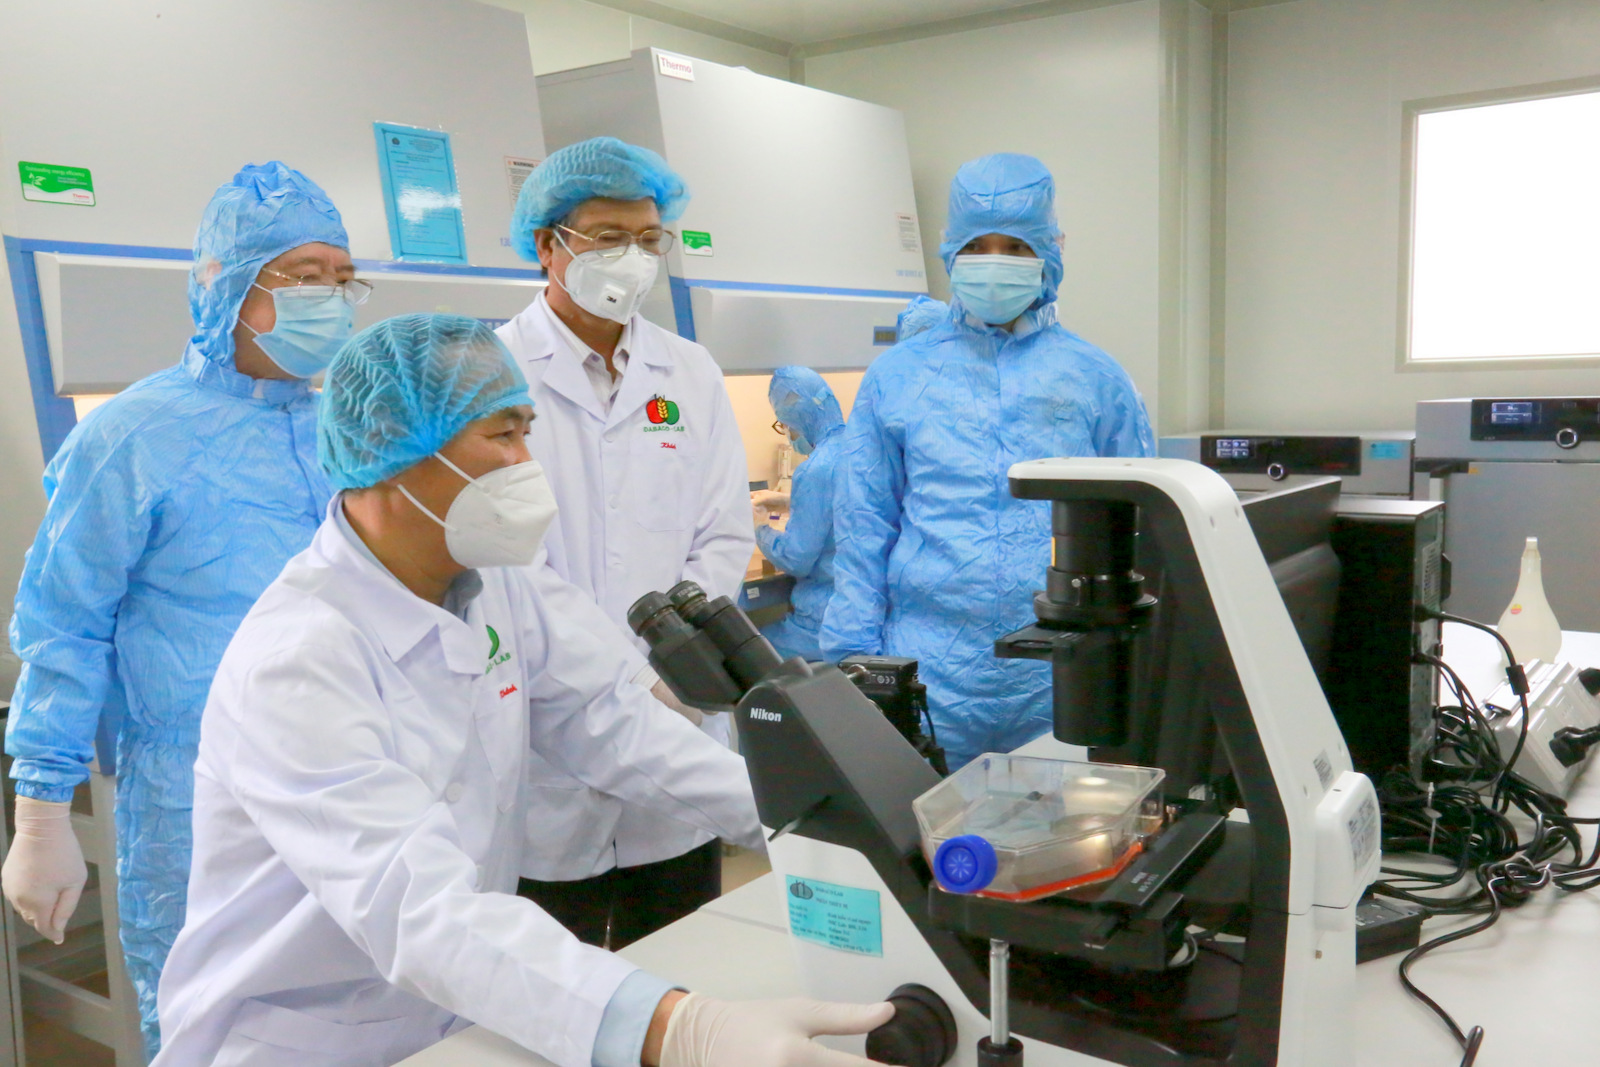 Dabaco với nhiệm vụ sản xuất thương mại vaccine dịch tả lợn Châu Phi - chìa khóa tương lai cho ngành chăn nuôi lợn Việt Nam - Ảnh 2.